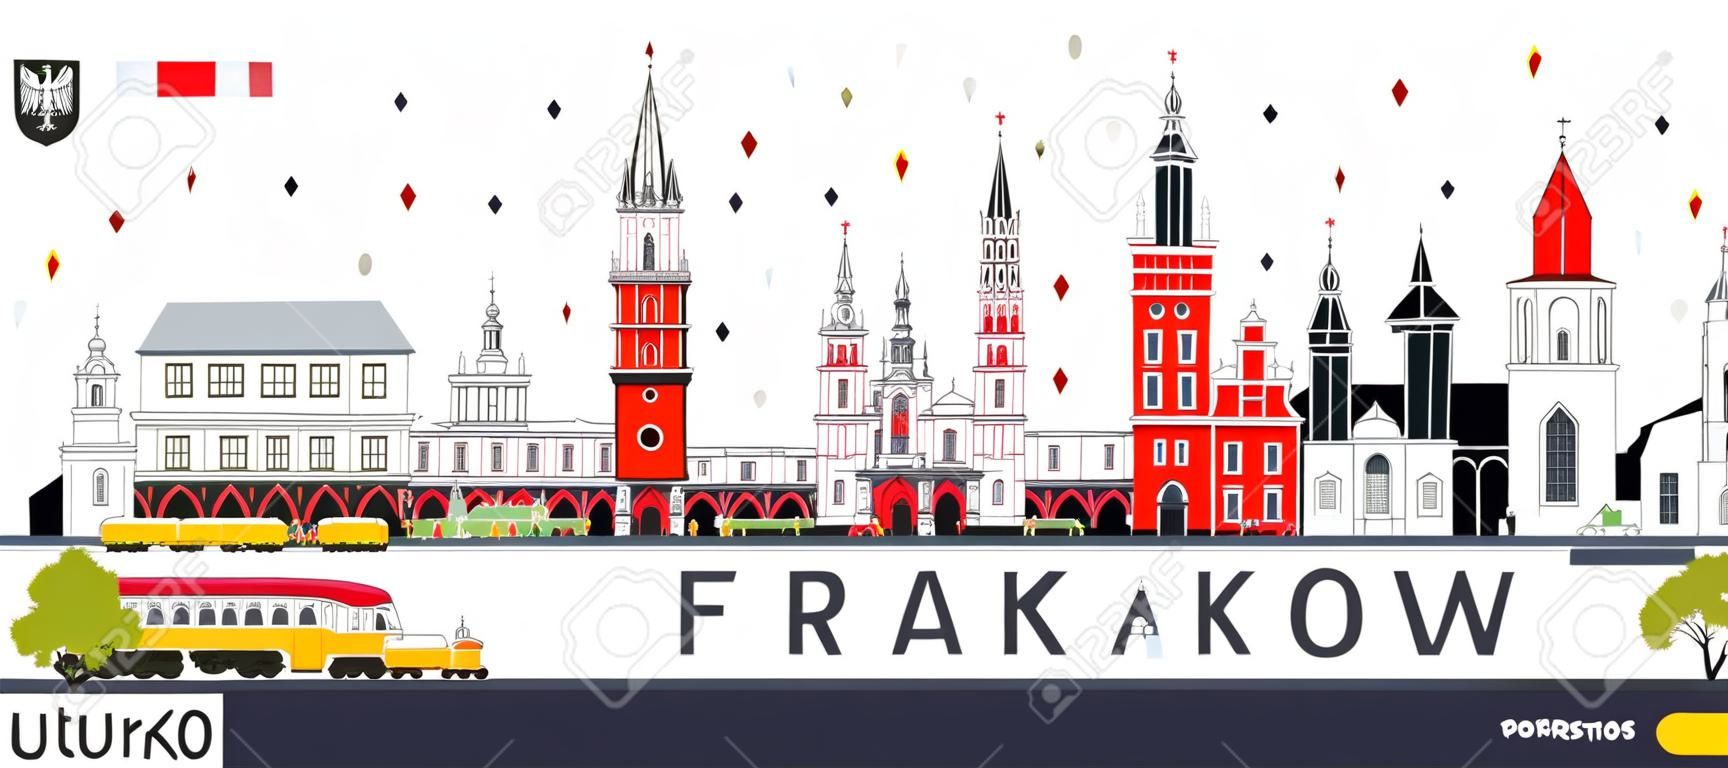 Orizzonte della città di Cracovia Polonia con le costruzioni di colore isolate su bianco. Illustrazione vettoriale Concetto di viaggio d'affari e turismo con architettura storica. Paesaggio urbano di Cracovia con punti di riferimento.